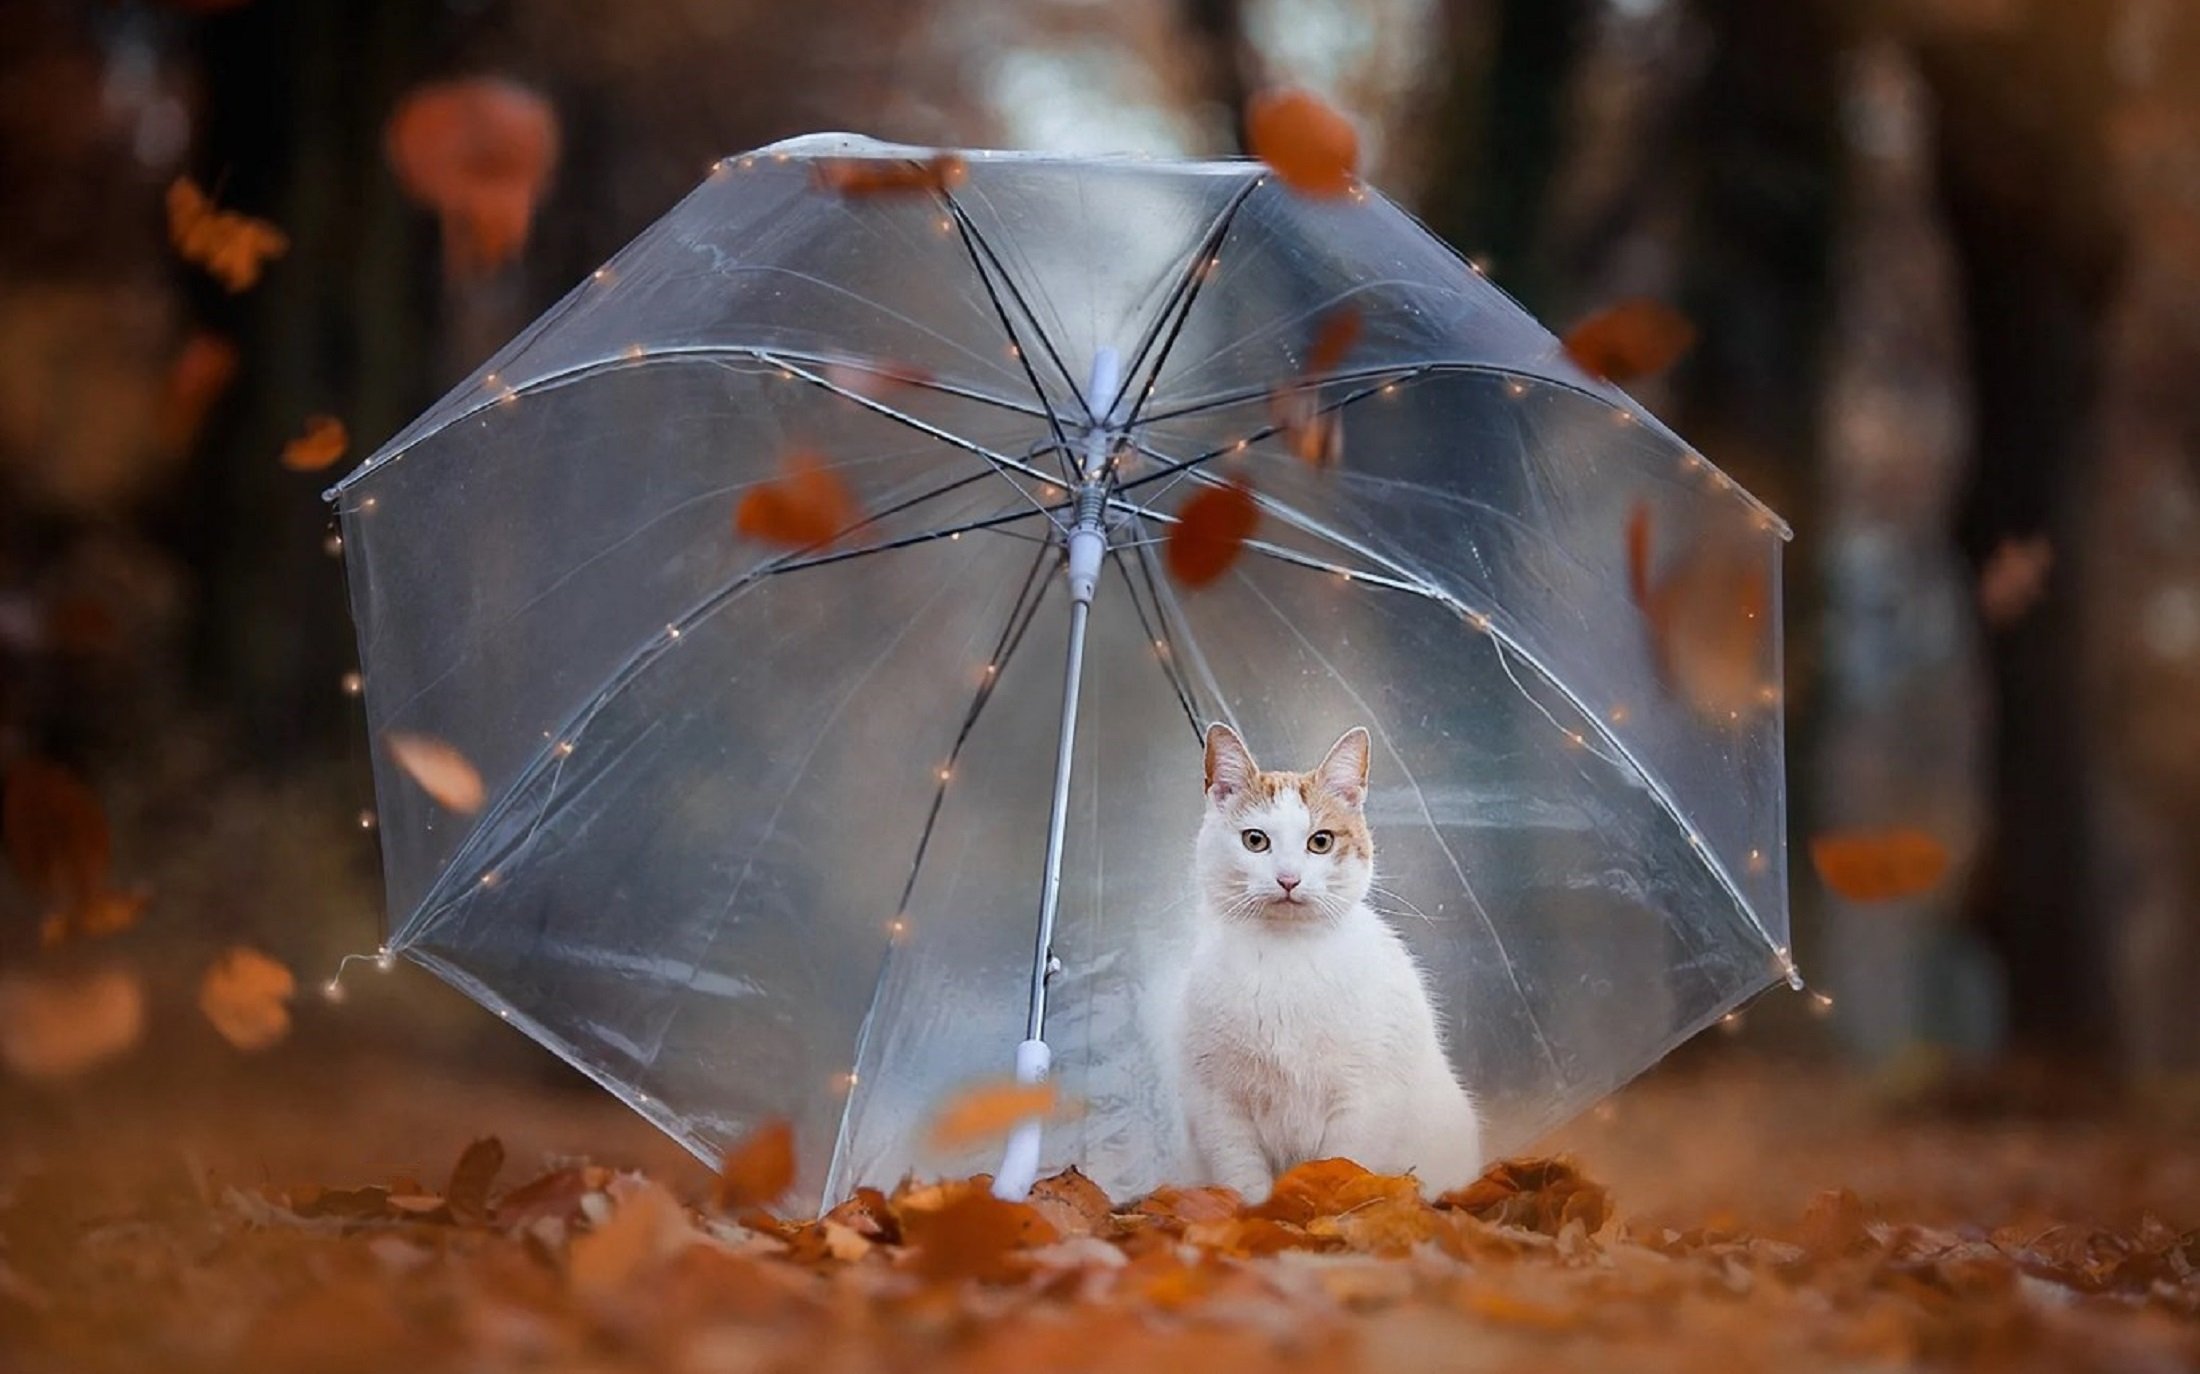 Rain animals. Котик под зонтиком. Кошка с зонтиком. Осенний дождь. Кот под зонтом.